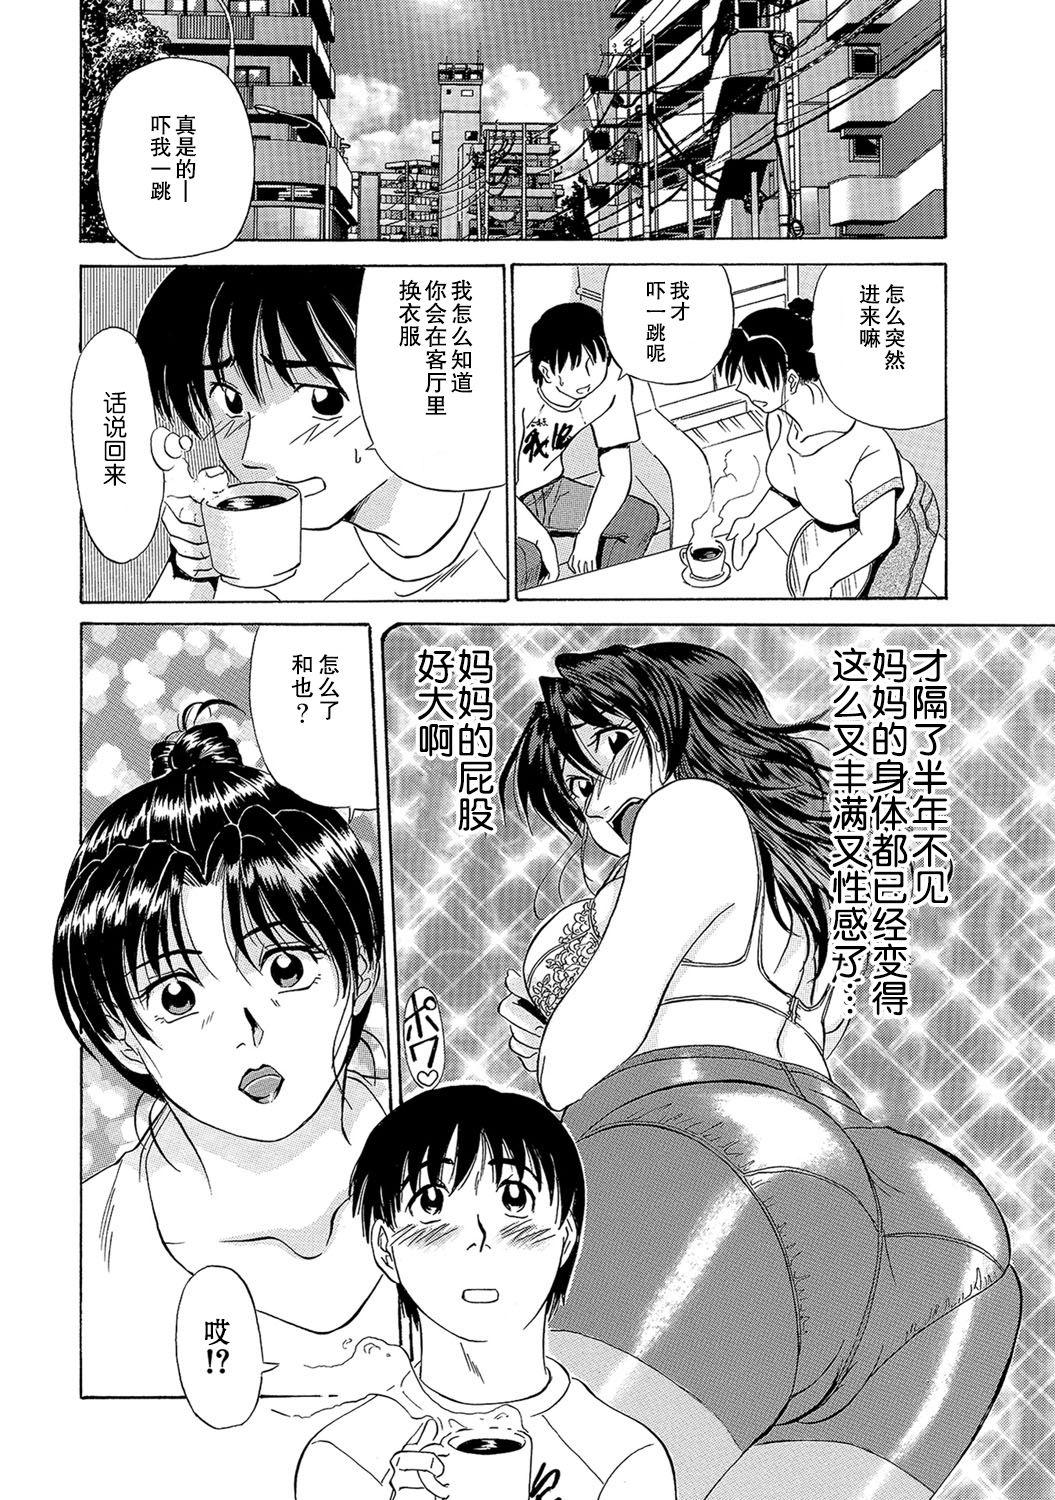 Condom Haha to no Hitoyo Tributo - Page 2